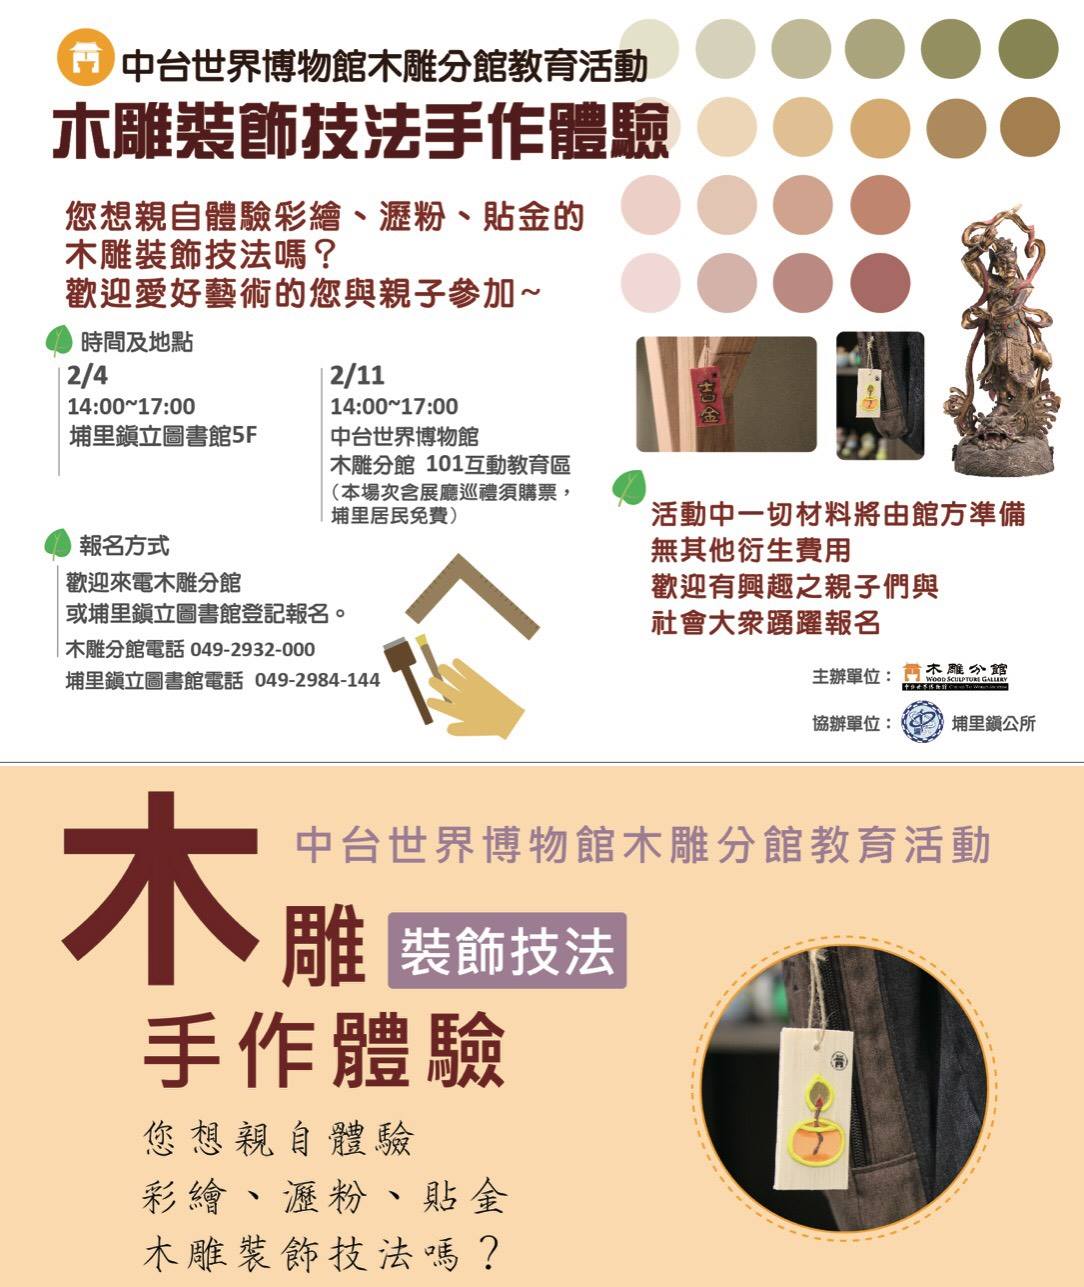 中台世界博物館木雕分館教育活動